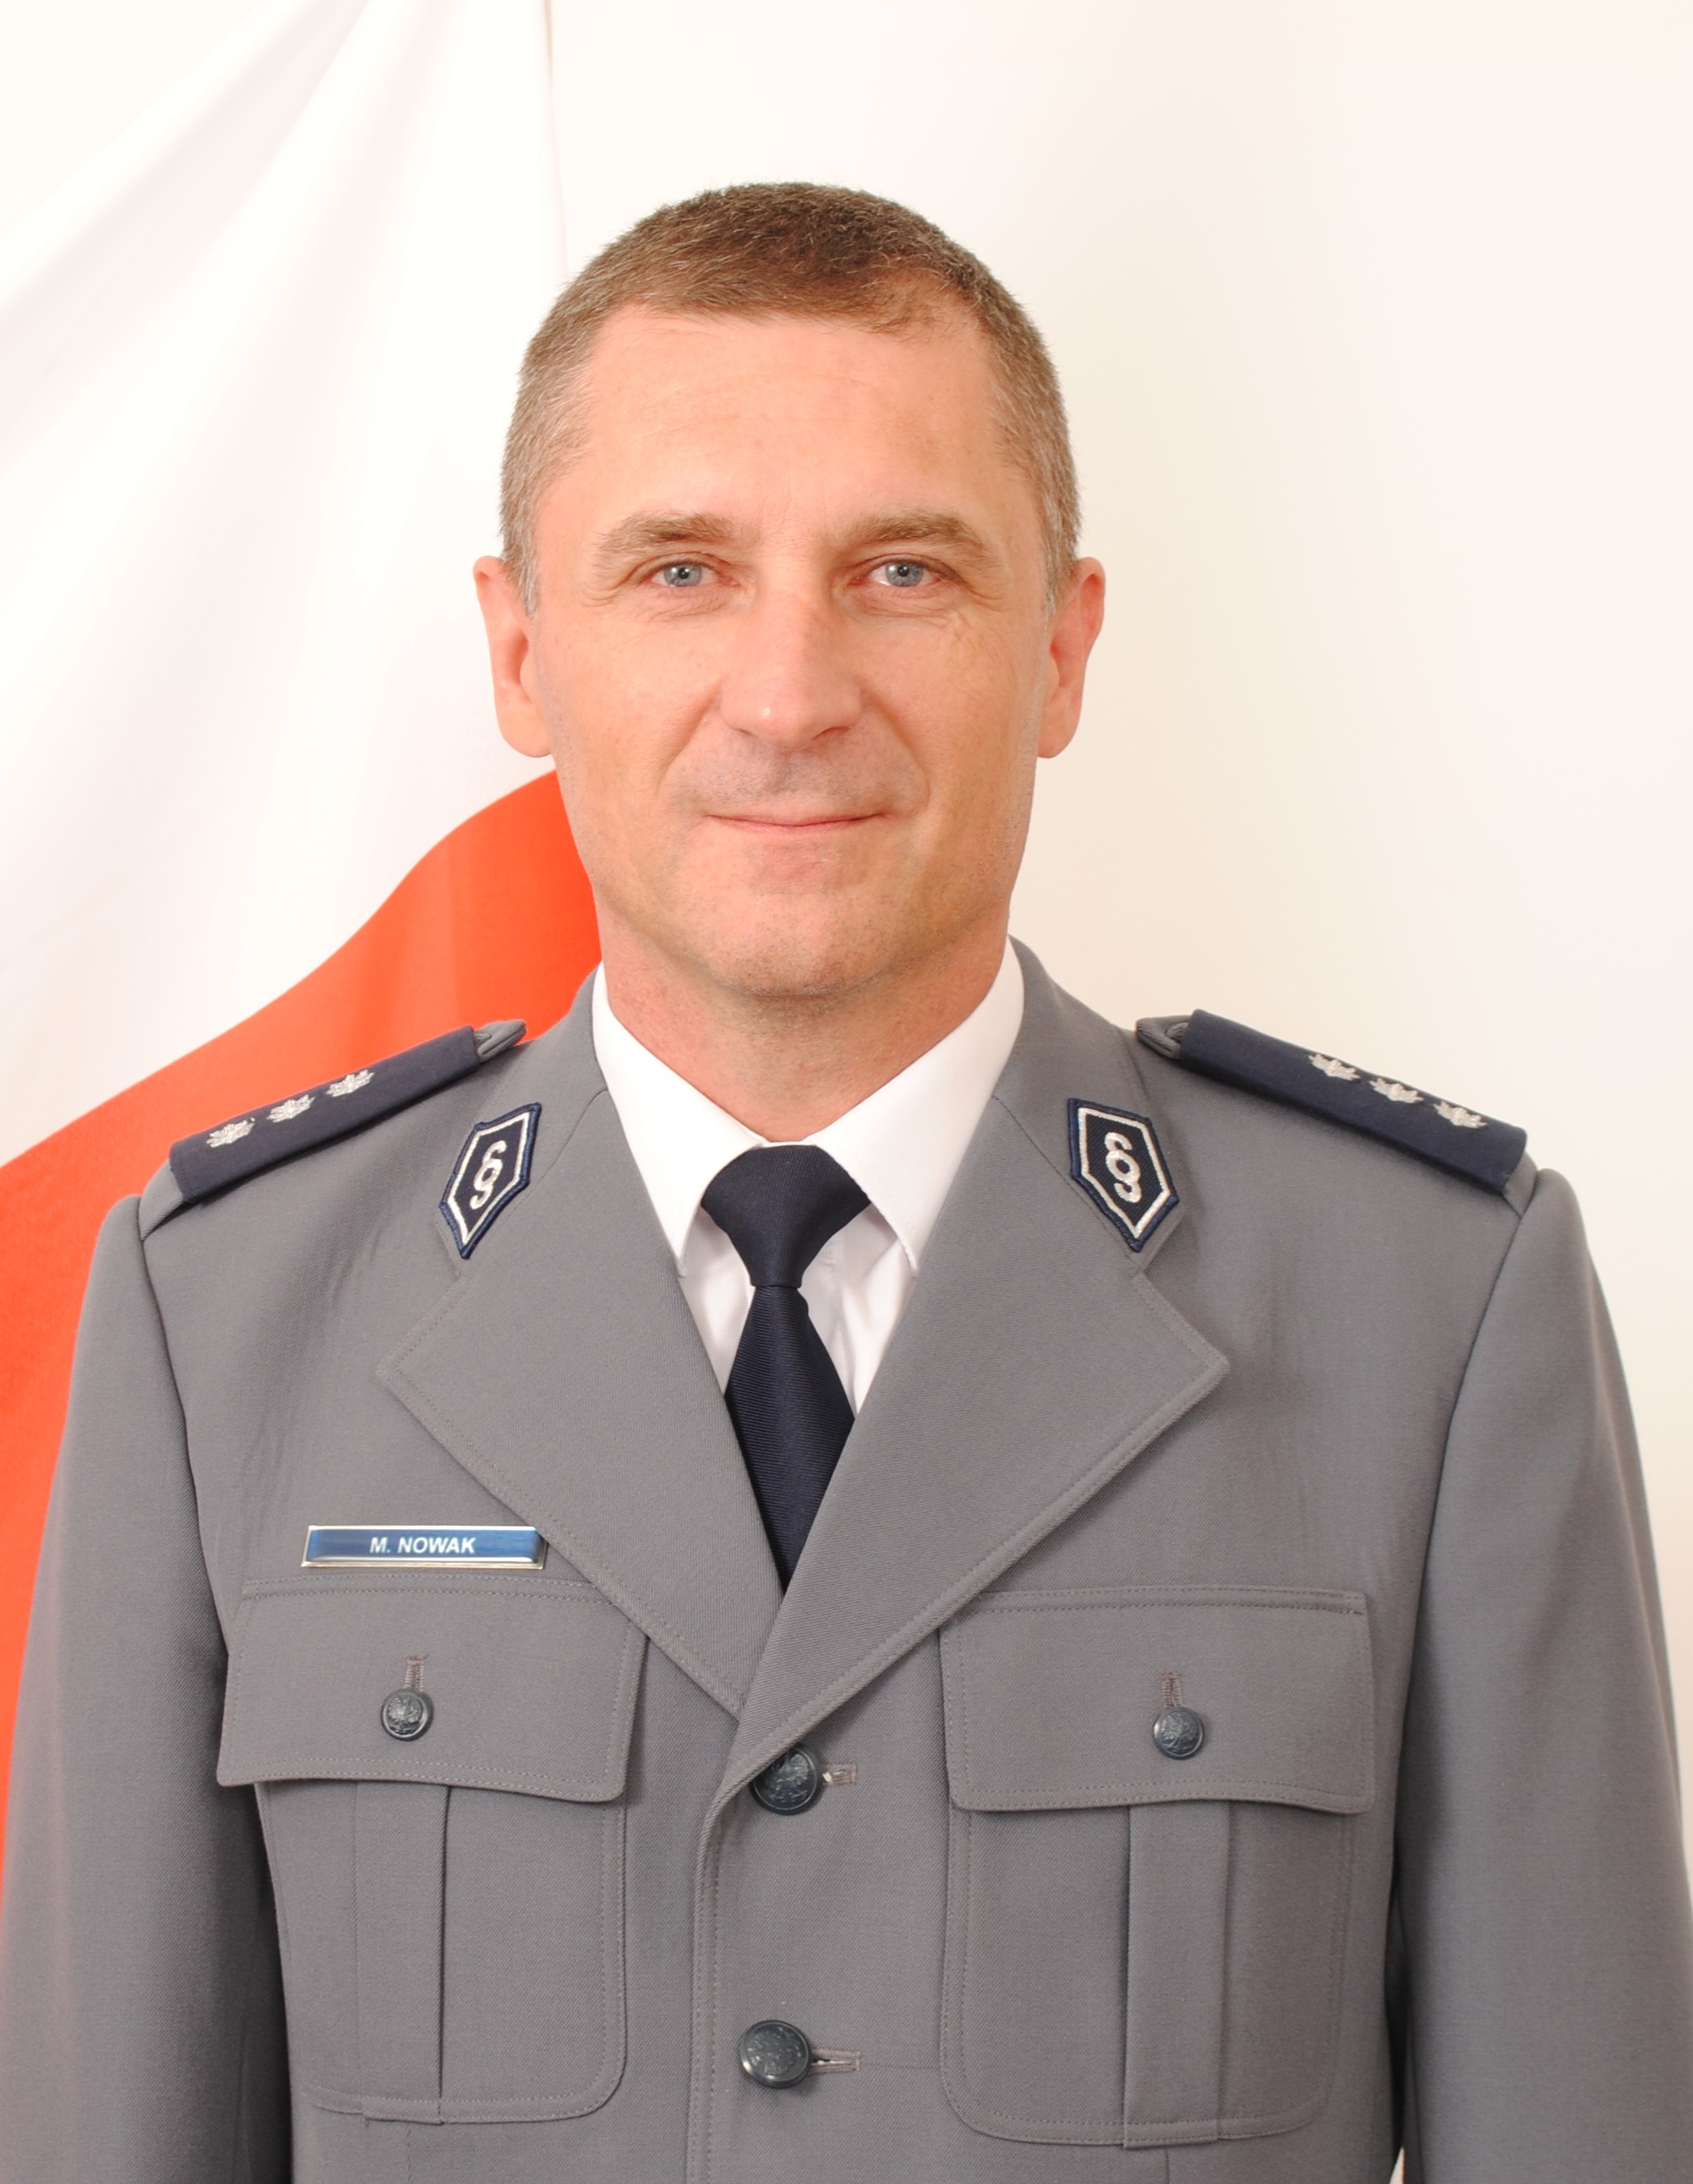 Zastępca Komendanta Komisariatu Policji w Białych Błotach komisarz Maciej Nowak